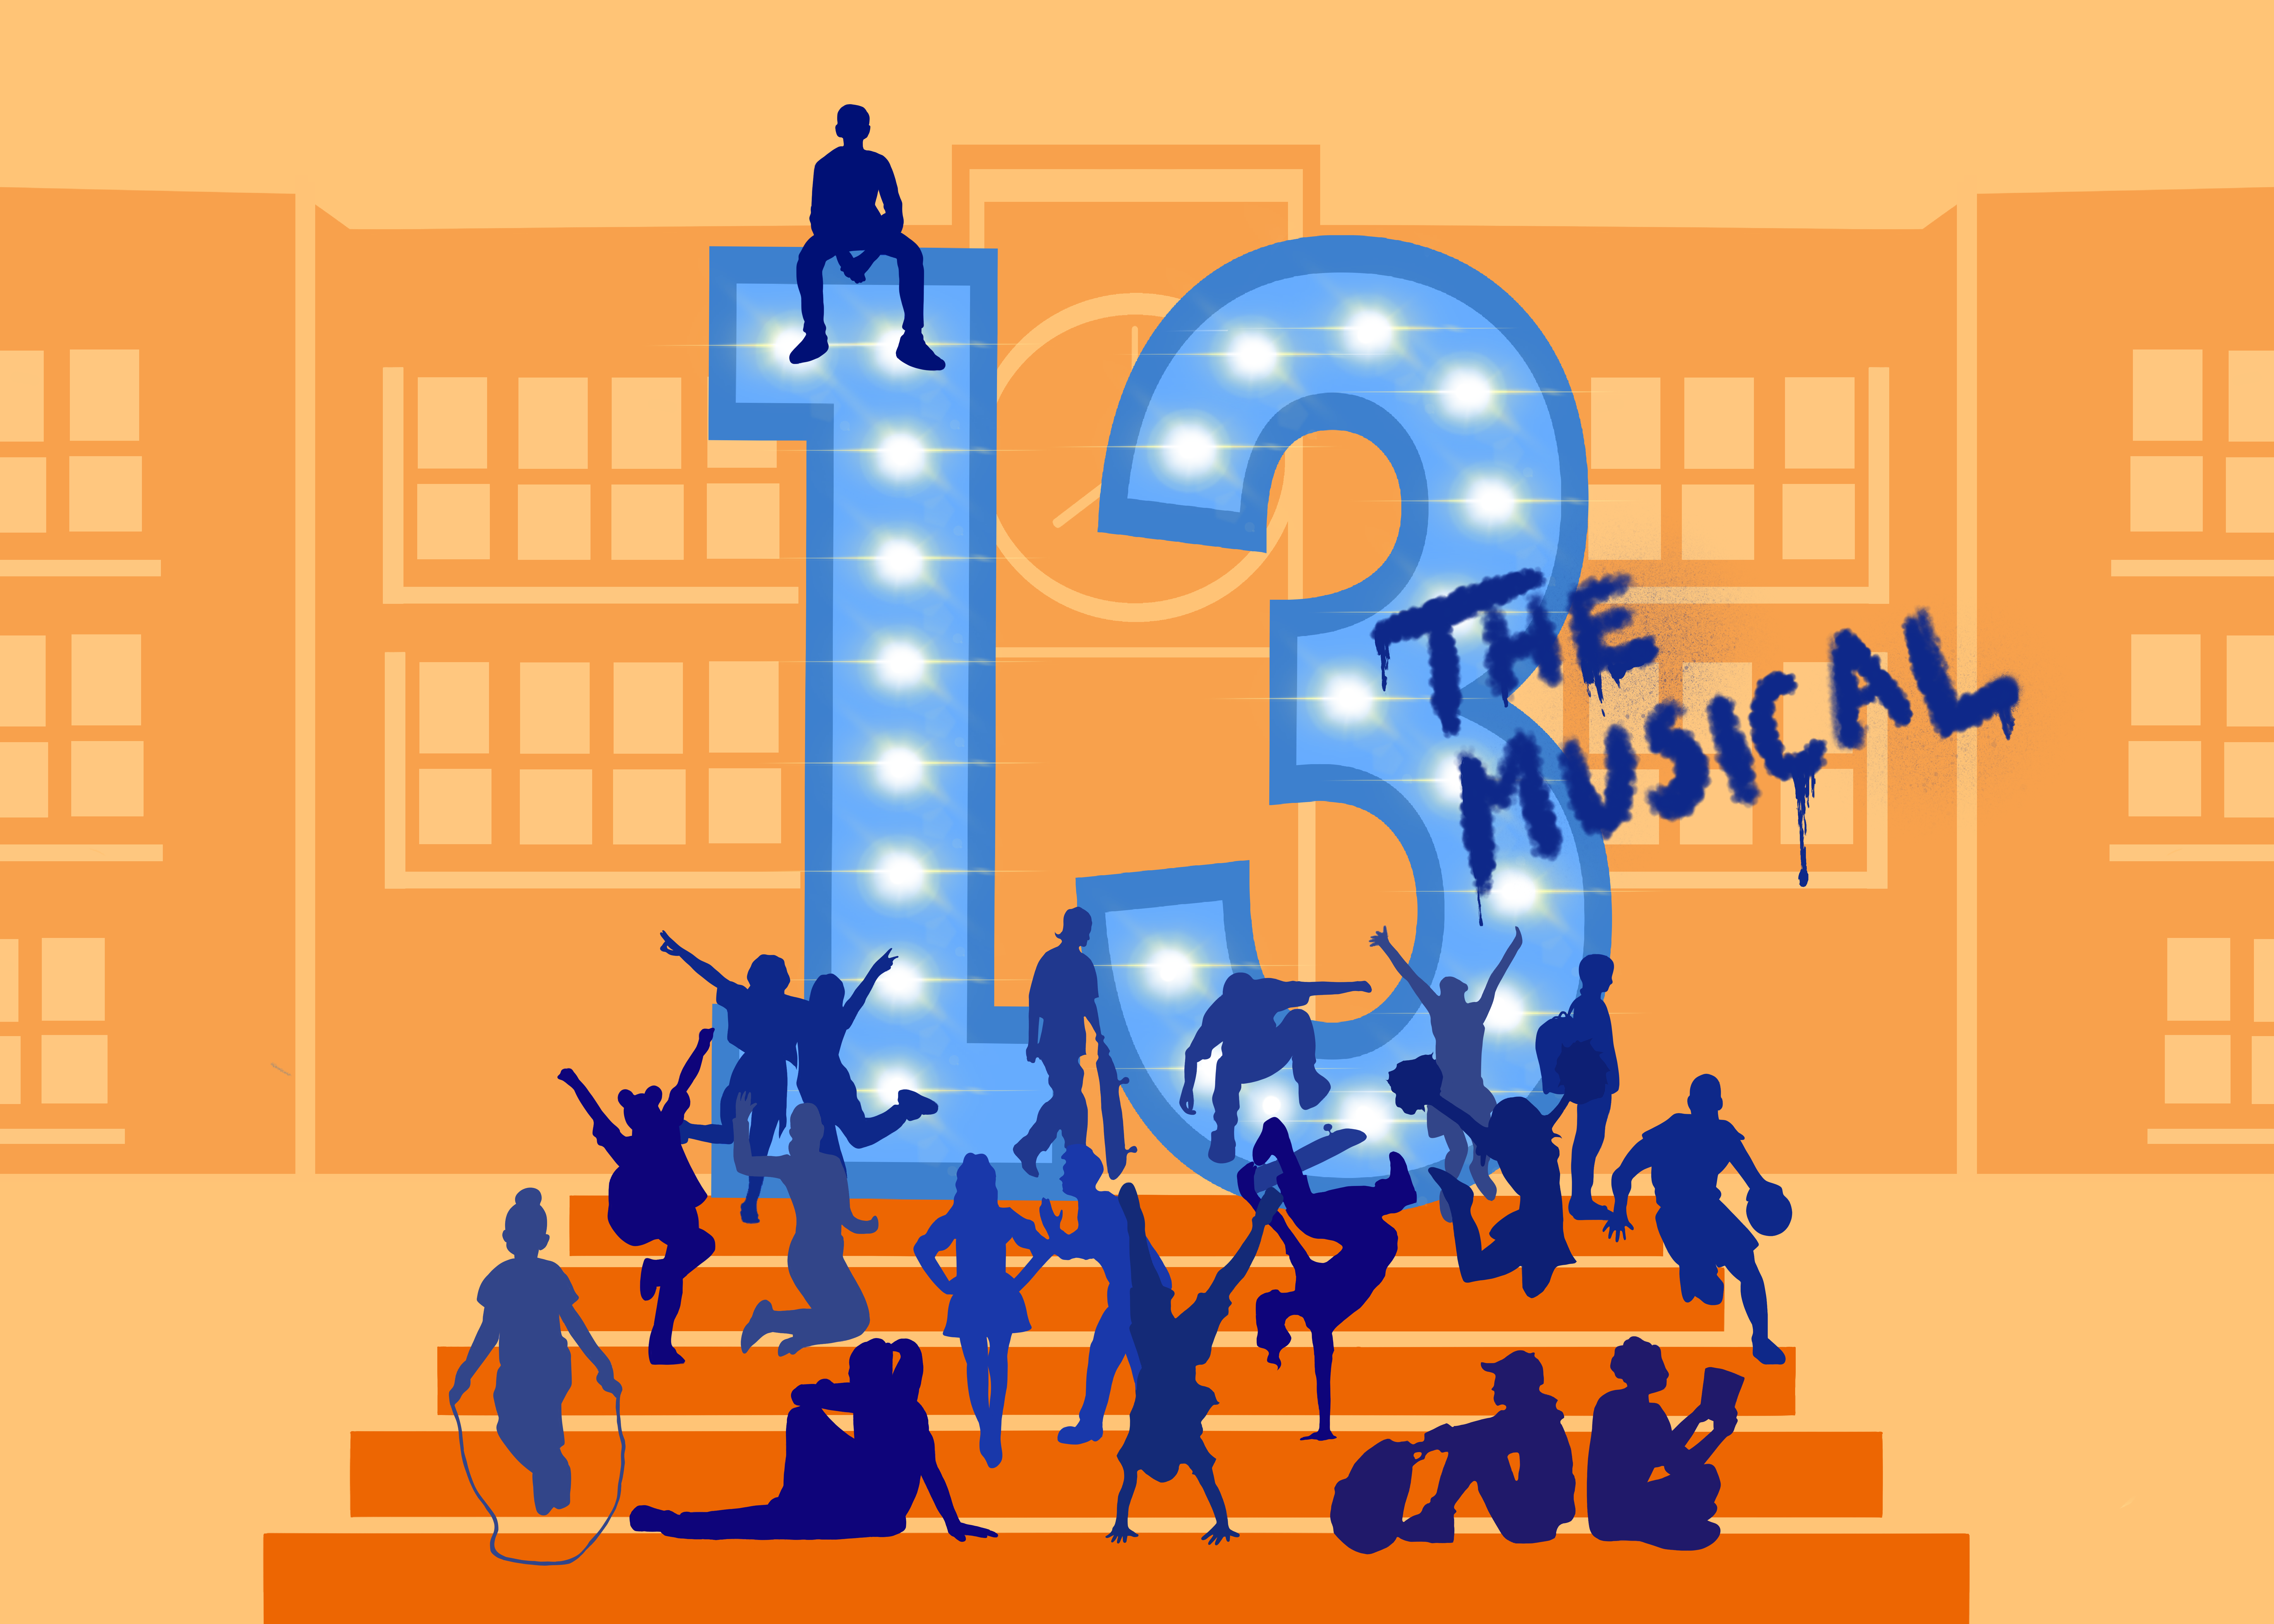 Et tegneseriebillede af en række børn, der står, sidder, hopper i reb og meget mere på en orange trappe. Tretten er trykt med store tal, og på dem er der skrevet "the musical". I baggrunden ses en stor skolelignende bygning.